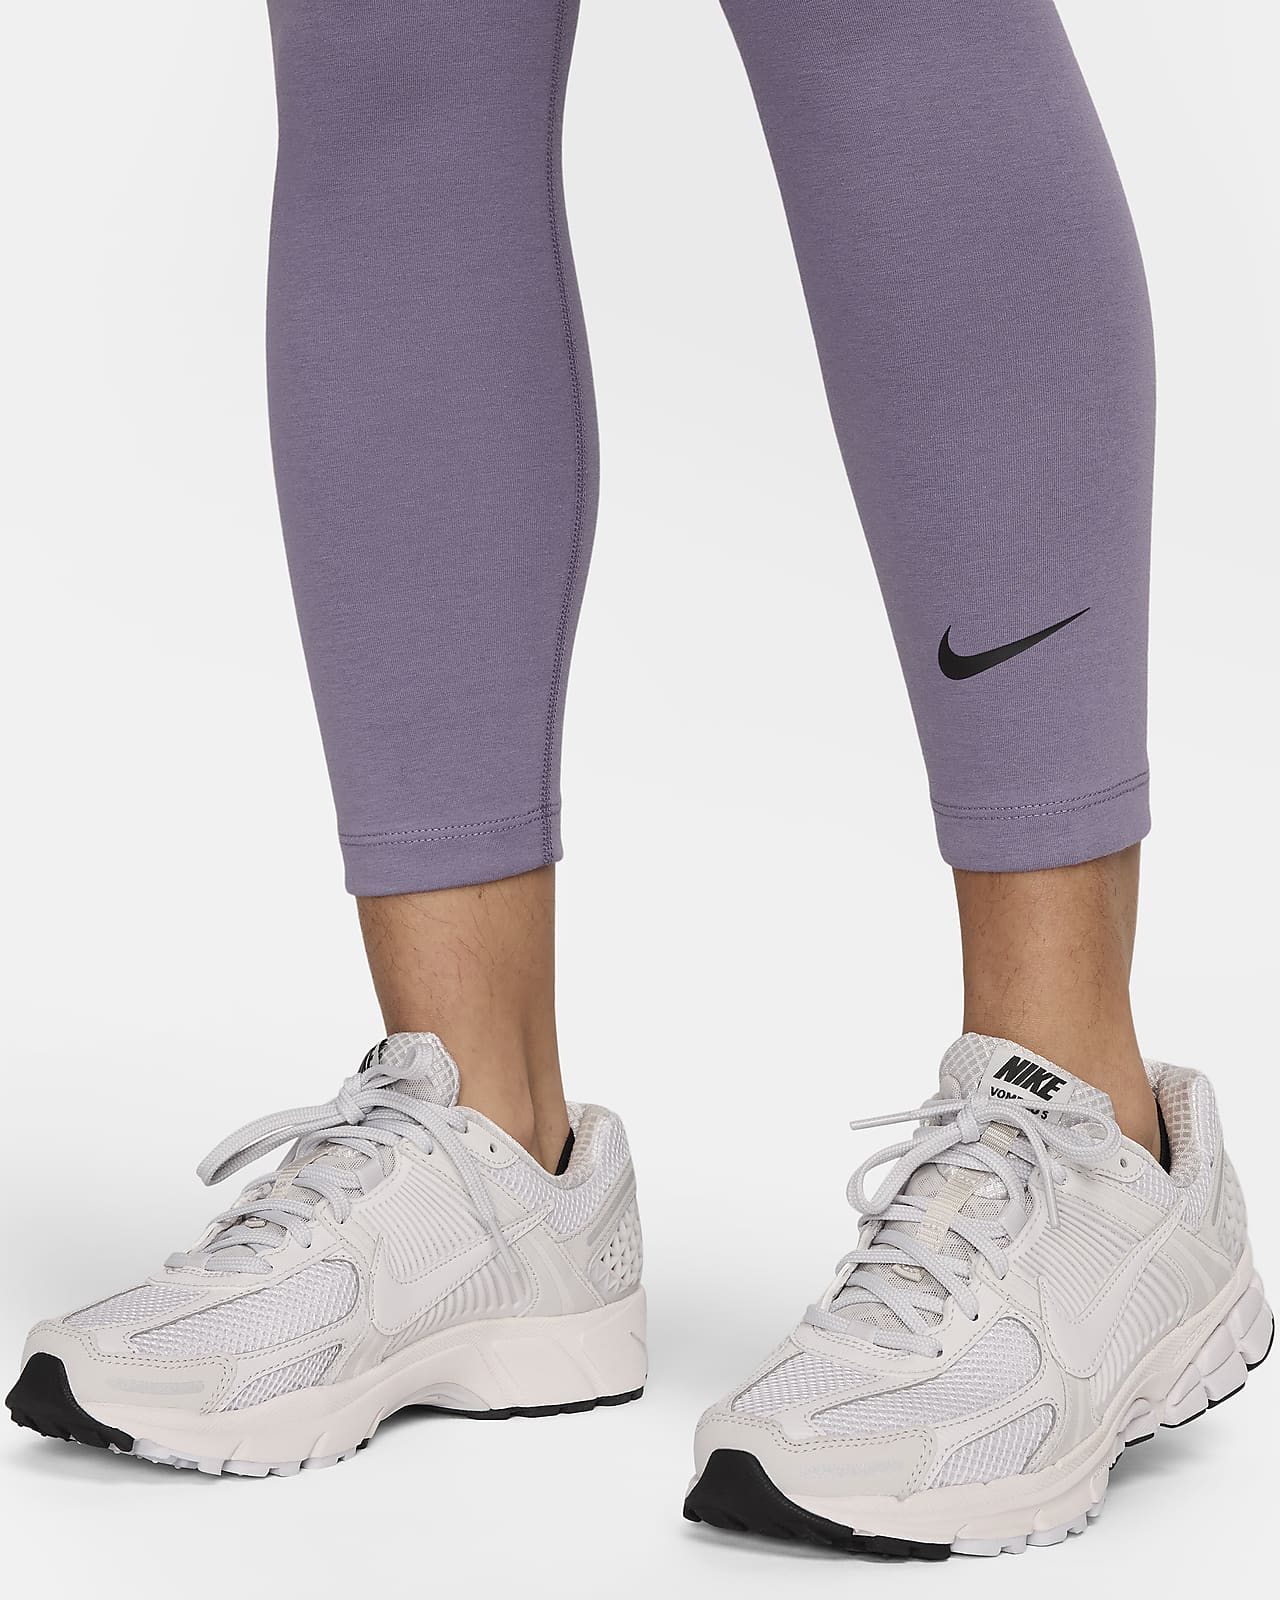 NIKE AIR WOMEN'S 7/8 Running Leggings (Pink) - Small - New ~ CU3095 684  £49.95 - PicClick UK